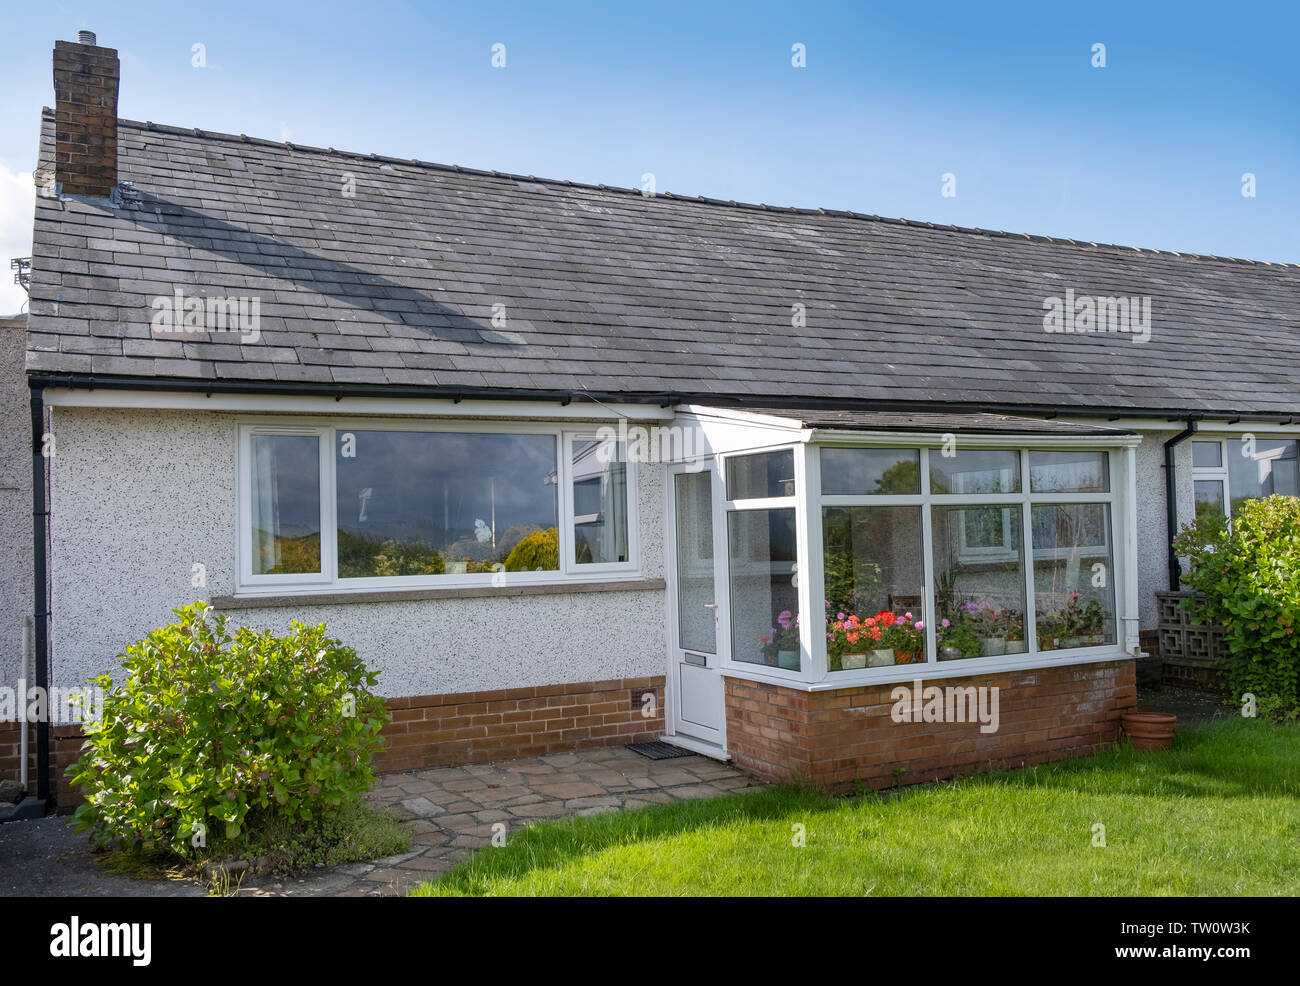 UK 60's bungalow con tetto in ardesia, quarzo bianco rendono upvc e finestre con doppi vetri e portico anteriore. Foto Stock